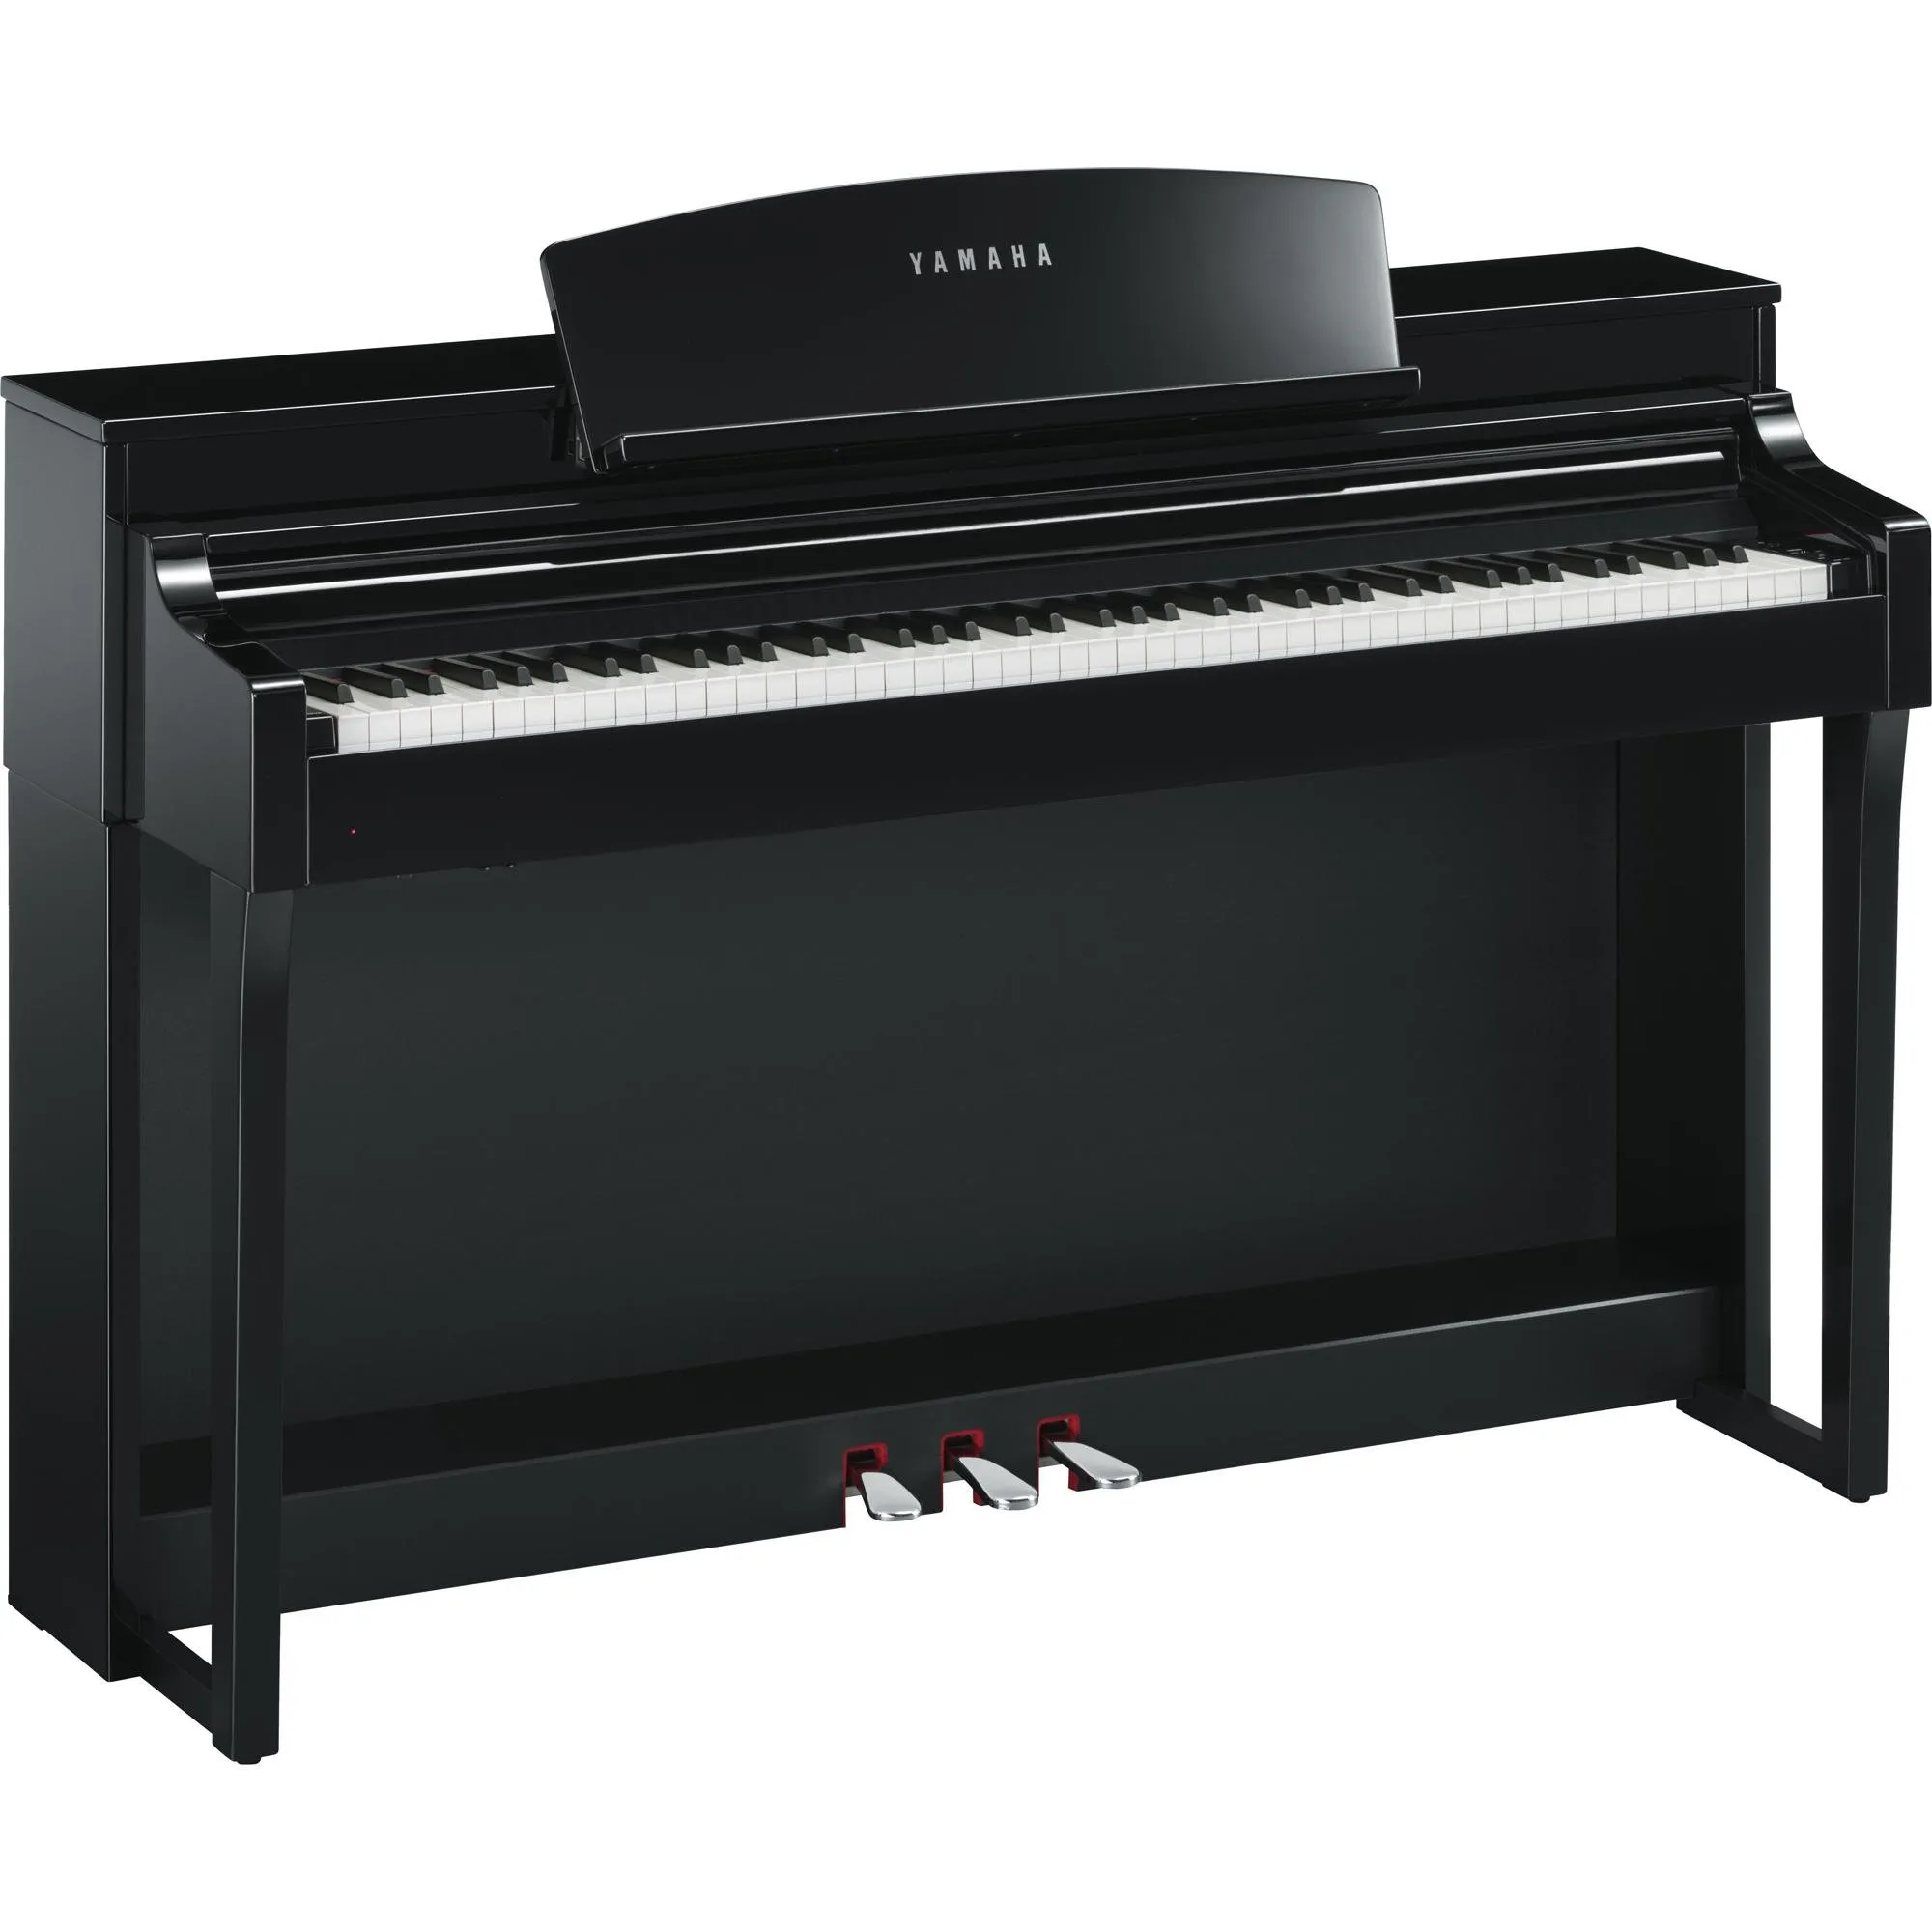 Piano Digital Yamaha Clavinova CSP-150 Preto Polido (81963)